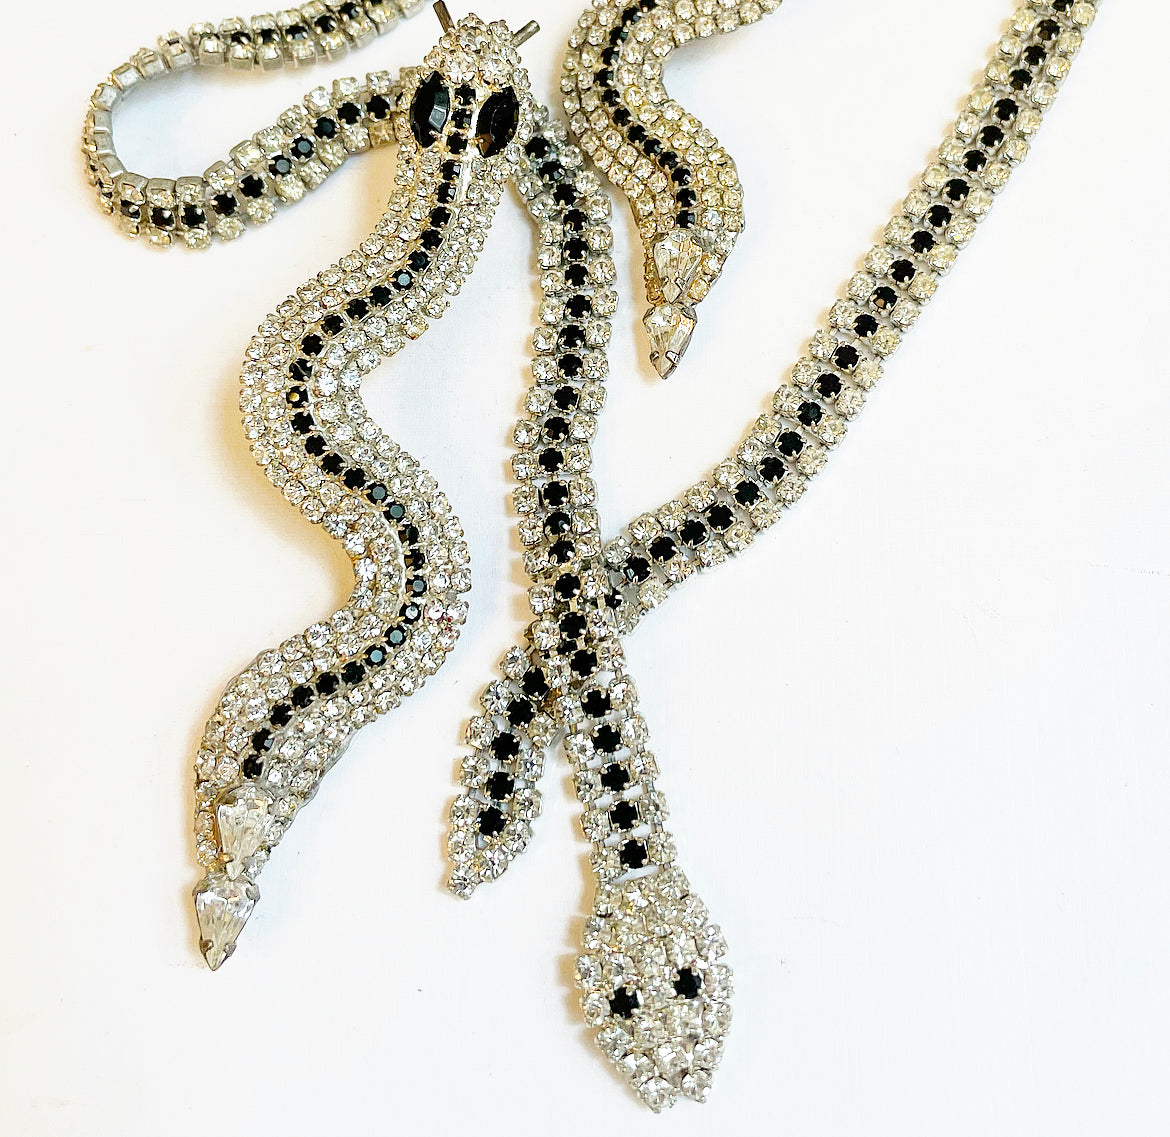 Vintage rhinestone snake necklace and earrring set